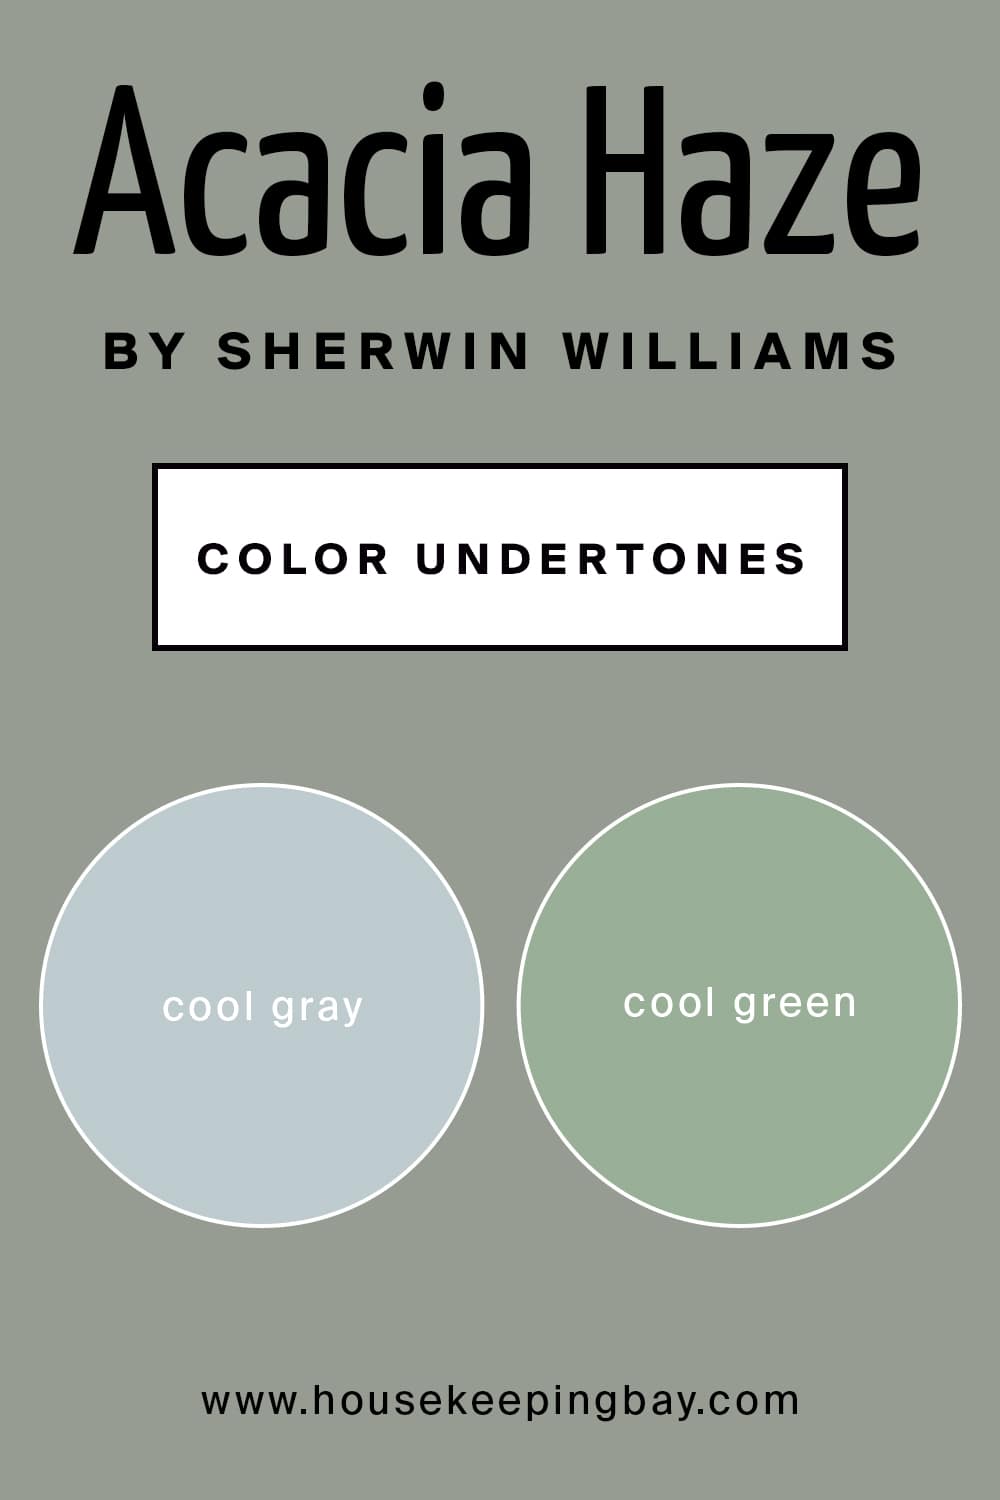 Acacia Haze by Sherwin Williams Color Undertones